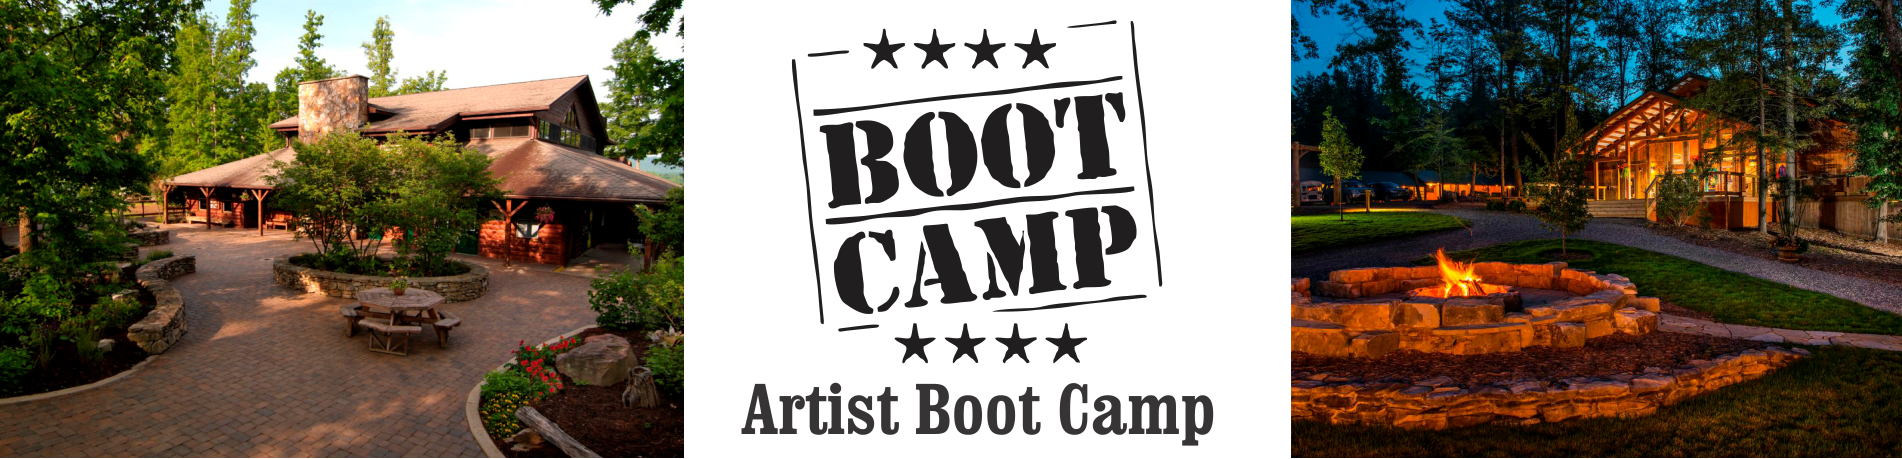 Boot Camp Art logo